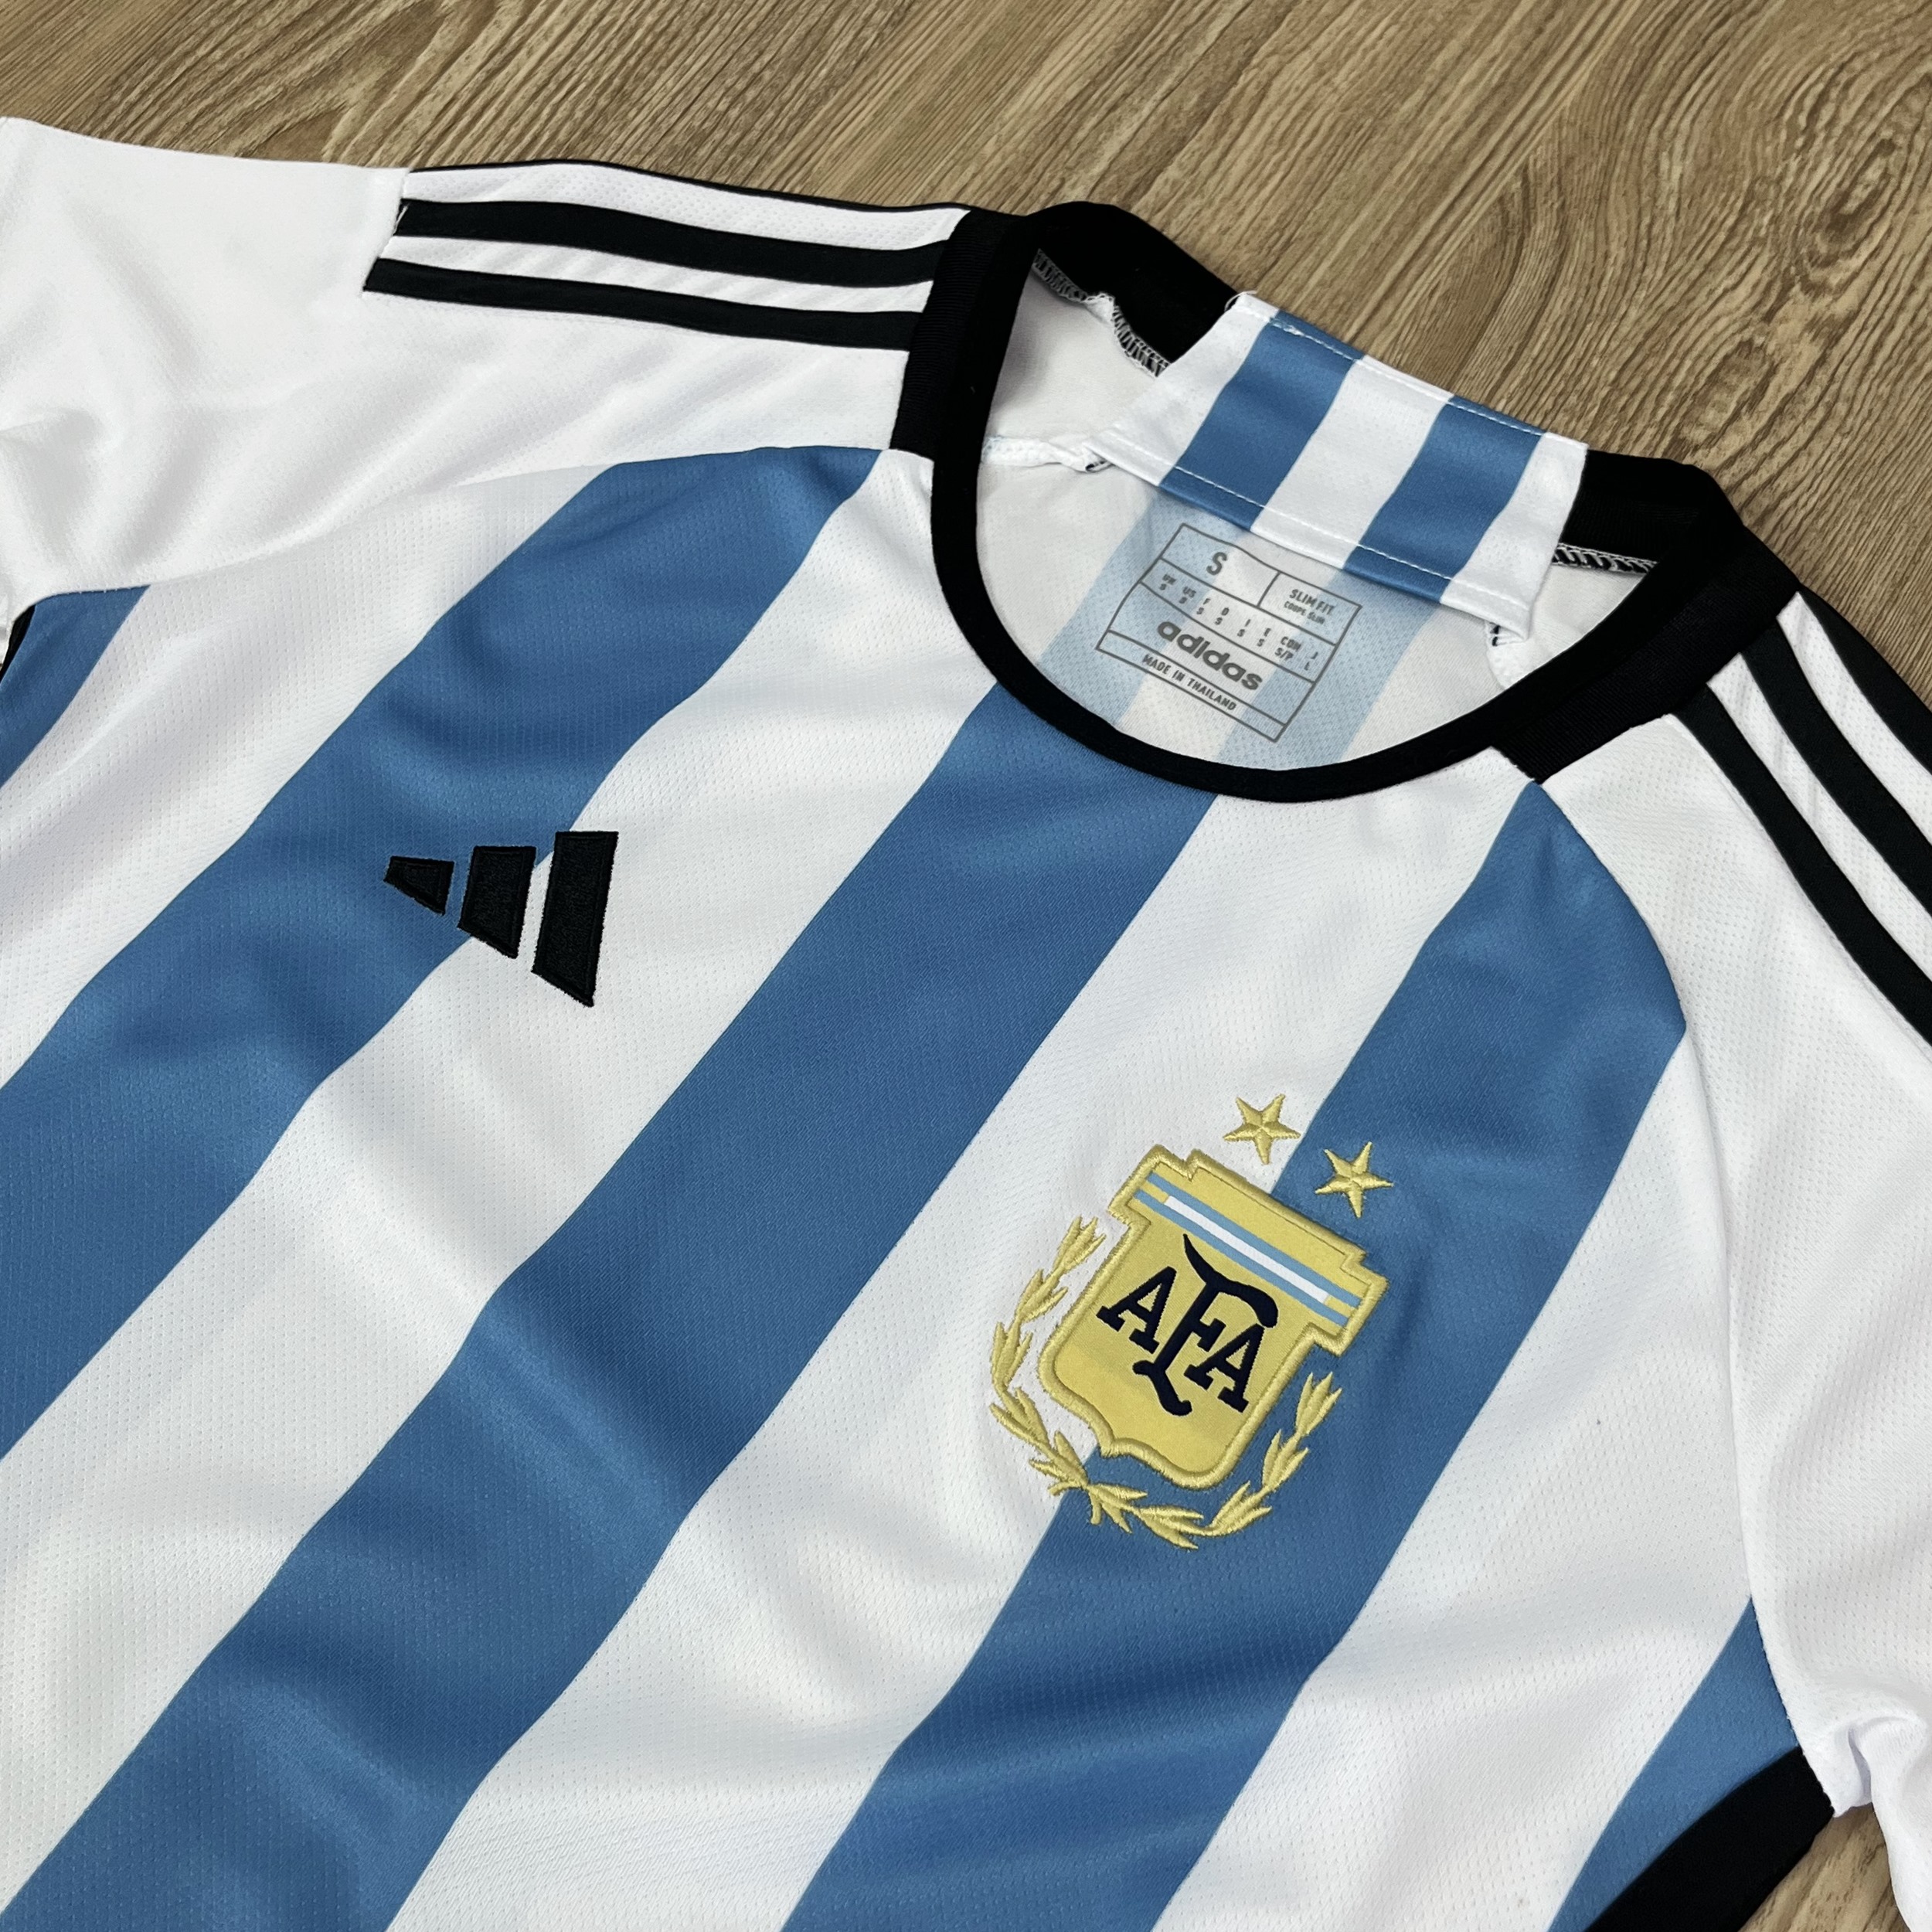 มุมมองเพิ่มเติมเกี่ยวกับ เสื้อบอลผู้หญิง เสื้อบอลทีม Argentine แบบเดียวกับต้นฉบับ รับประกันคุณภาพ เกรดAAA